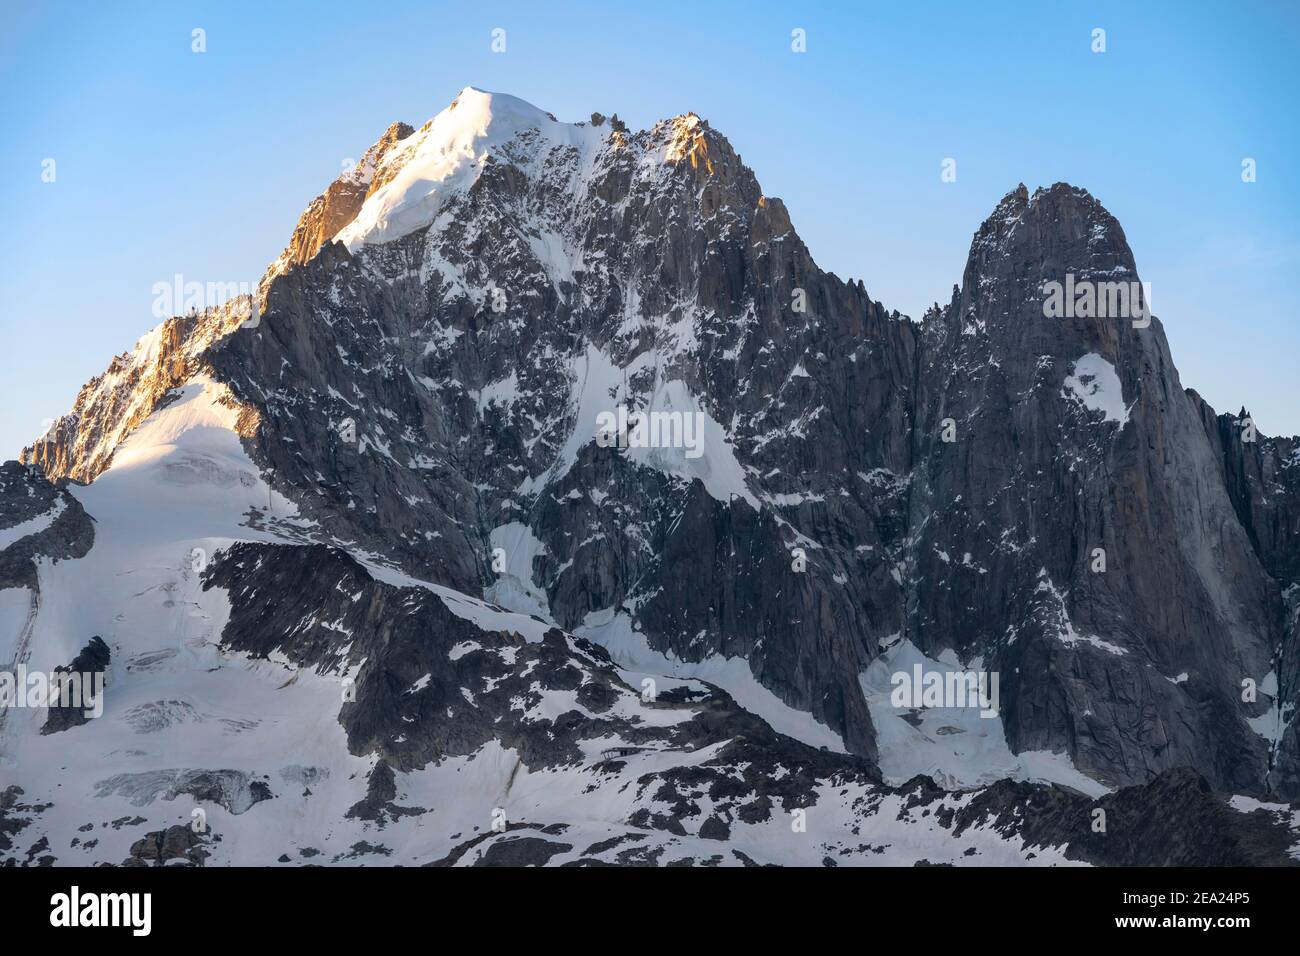 Fianco di montagna dell'Aiguille Verte con Grand Dru, Massiccio del Monte Bianco, Chamonix-Mont-Blanc, alta Savoia, Francia Foto Stock